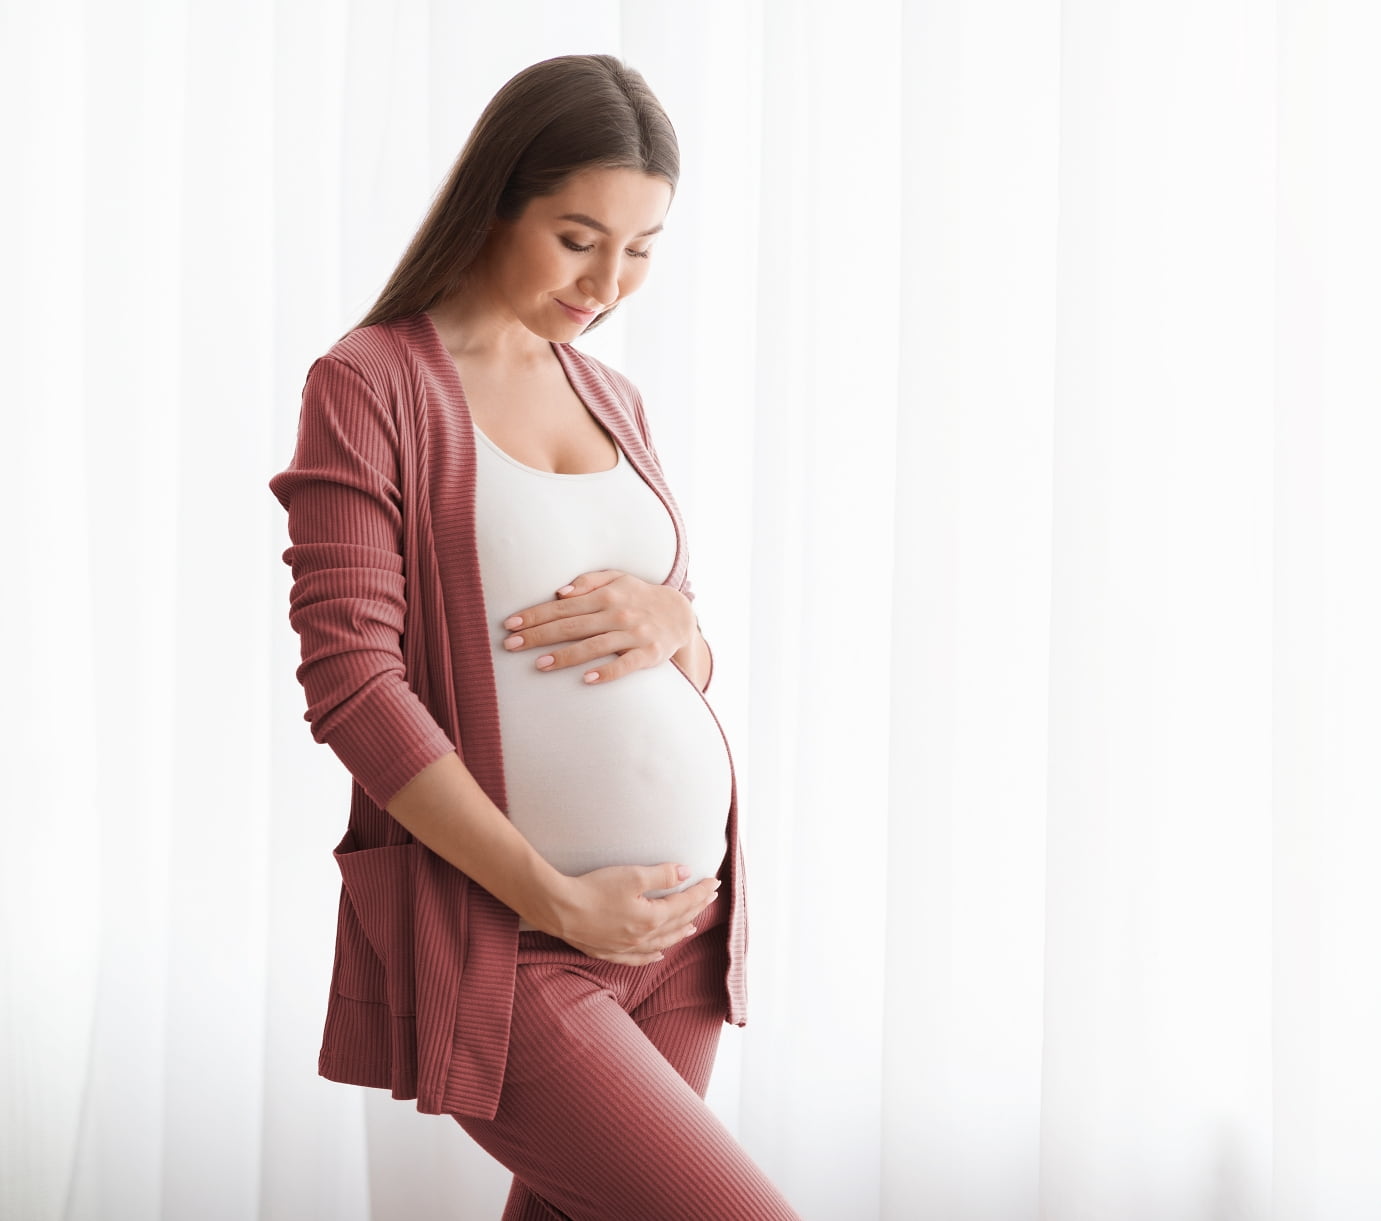 https://deepbluemedspa.b-cdn.net/wp-content/uploads/2022/06/young-pregnant-woman.jpg